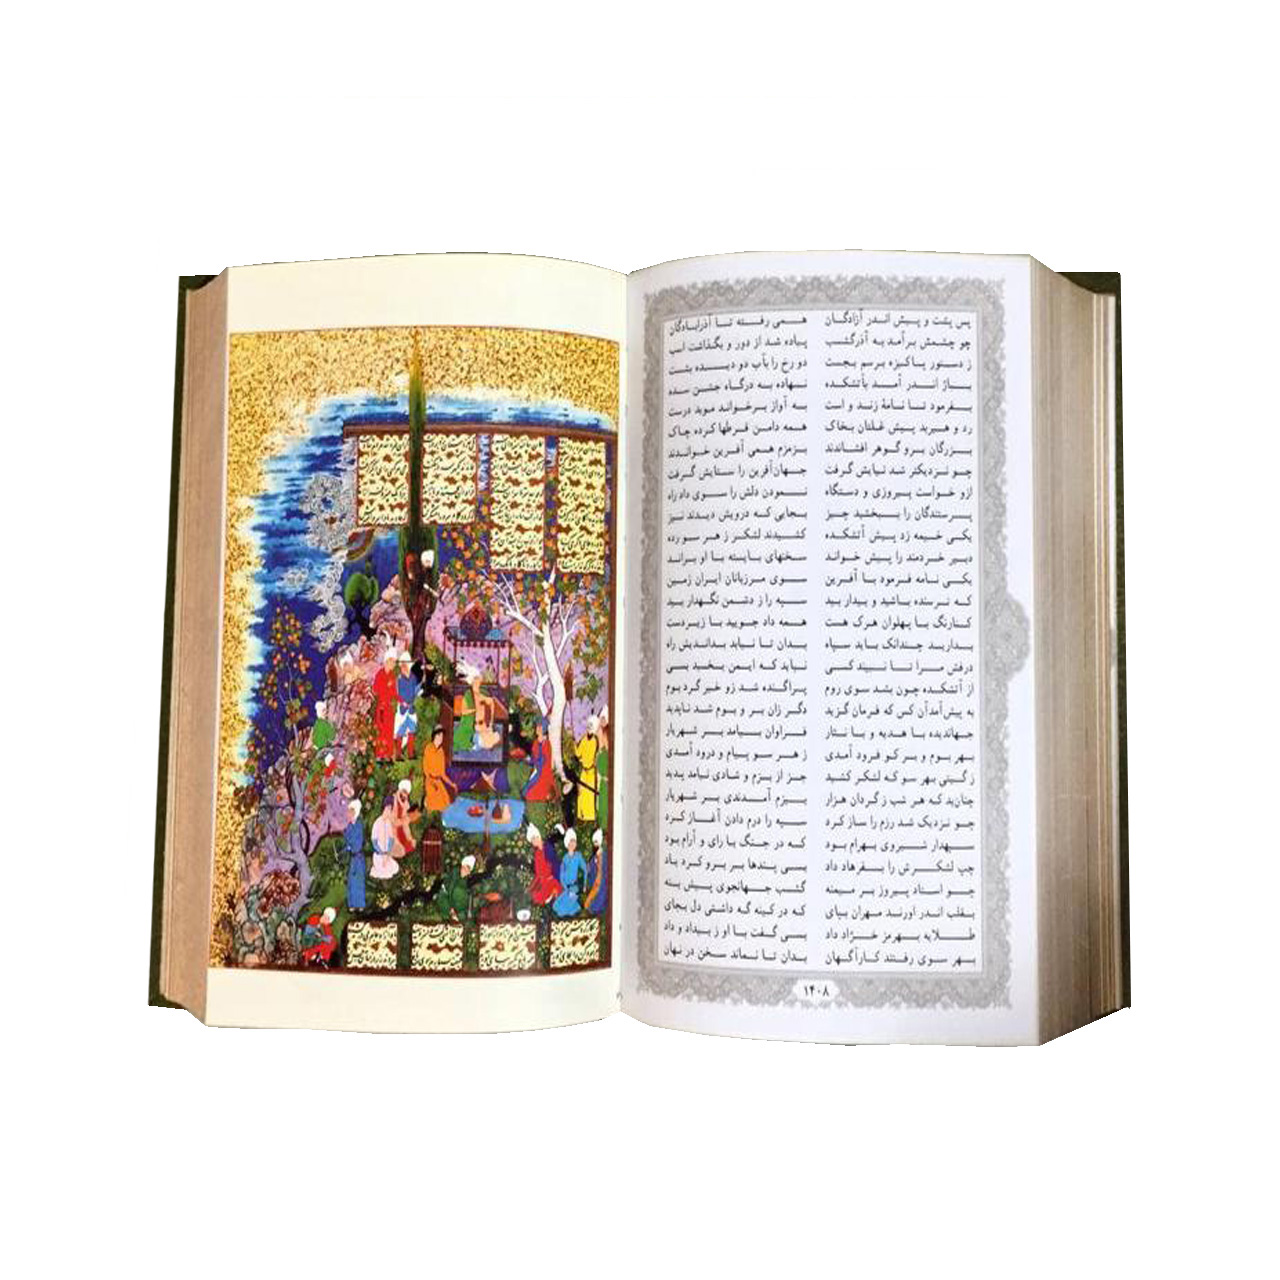  کتاب متن کامل شاهنامه فردوسی انتشارات پارمیس 2جلدی